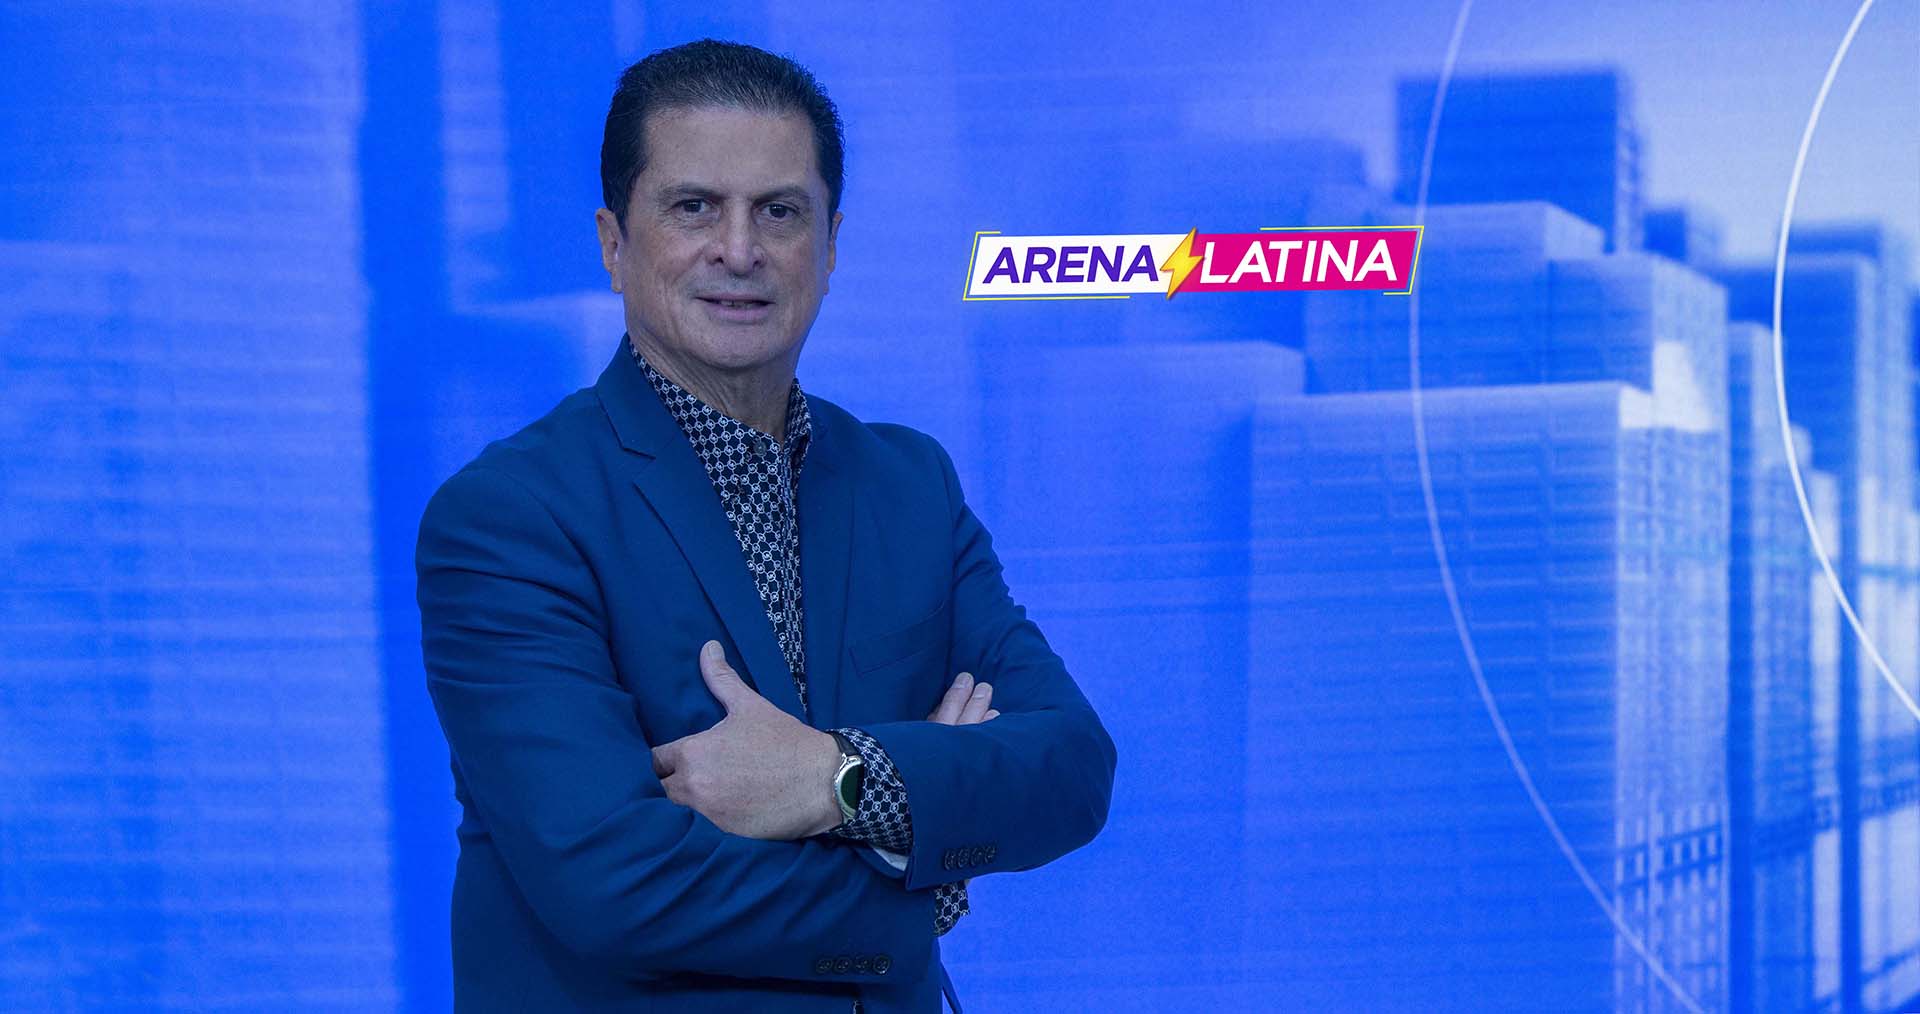 Al día con los deportes en Visión Latina TV